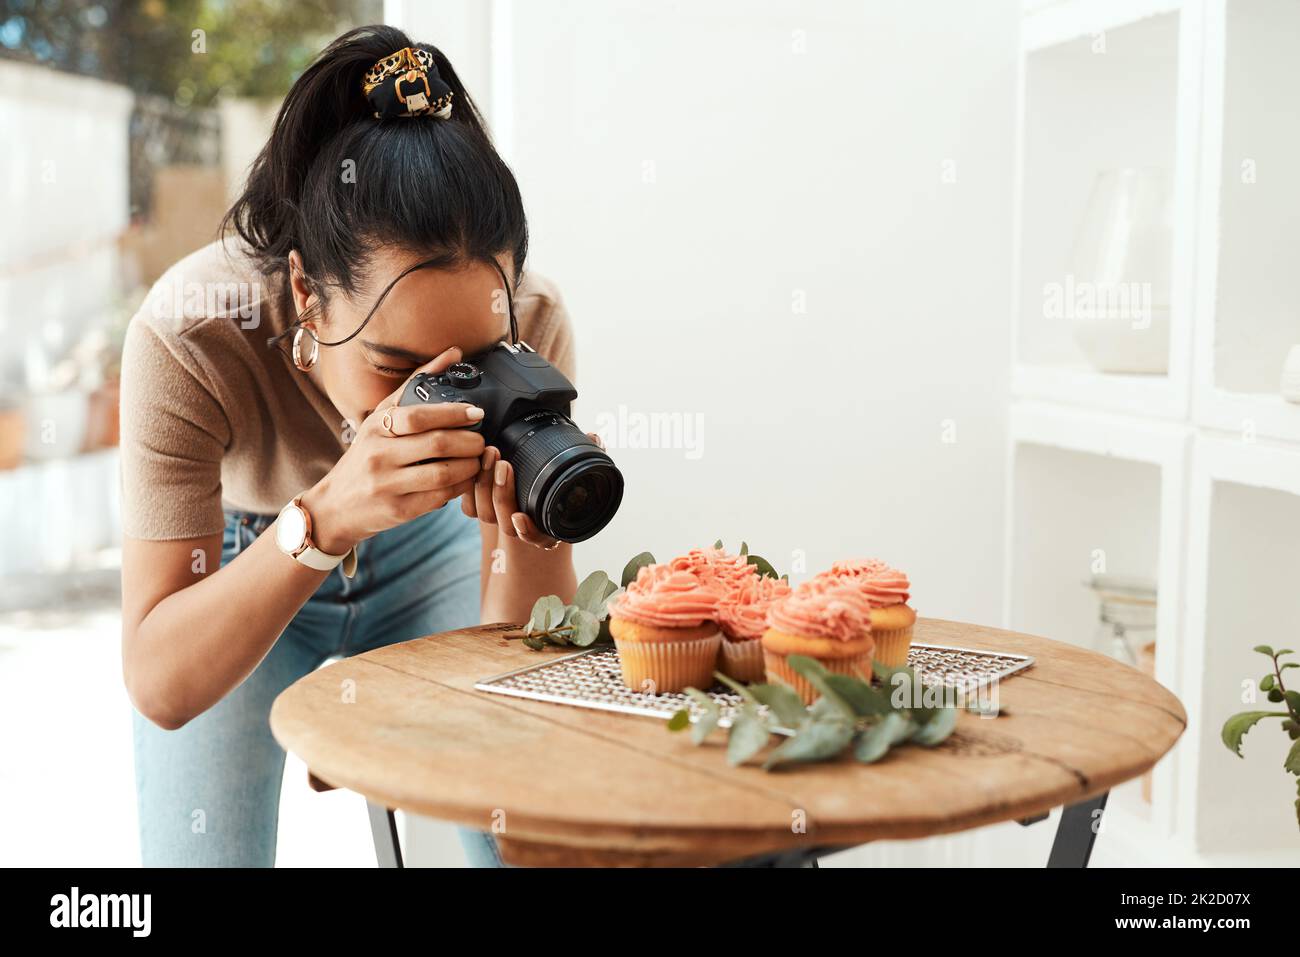 Se rapprocher suffisamment pour capturer les détails. Photo rognée d'une jeune femme d'affaires attirante utilisant son appareil photo pour photographier des cupcakes pour son blog. Banque D'Images